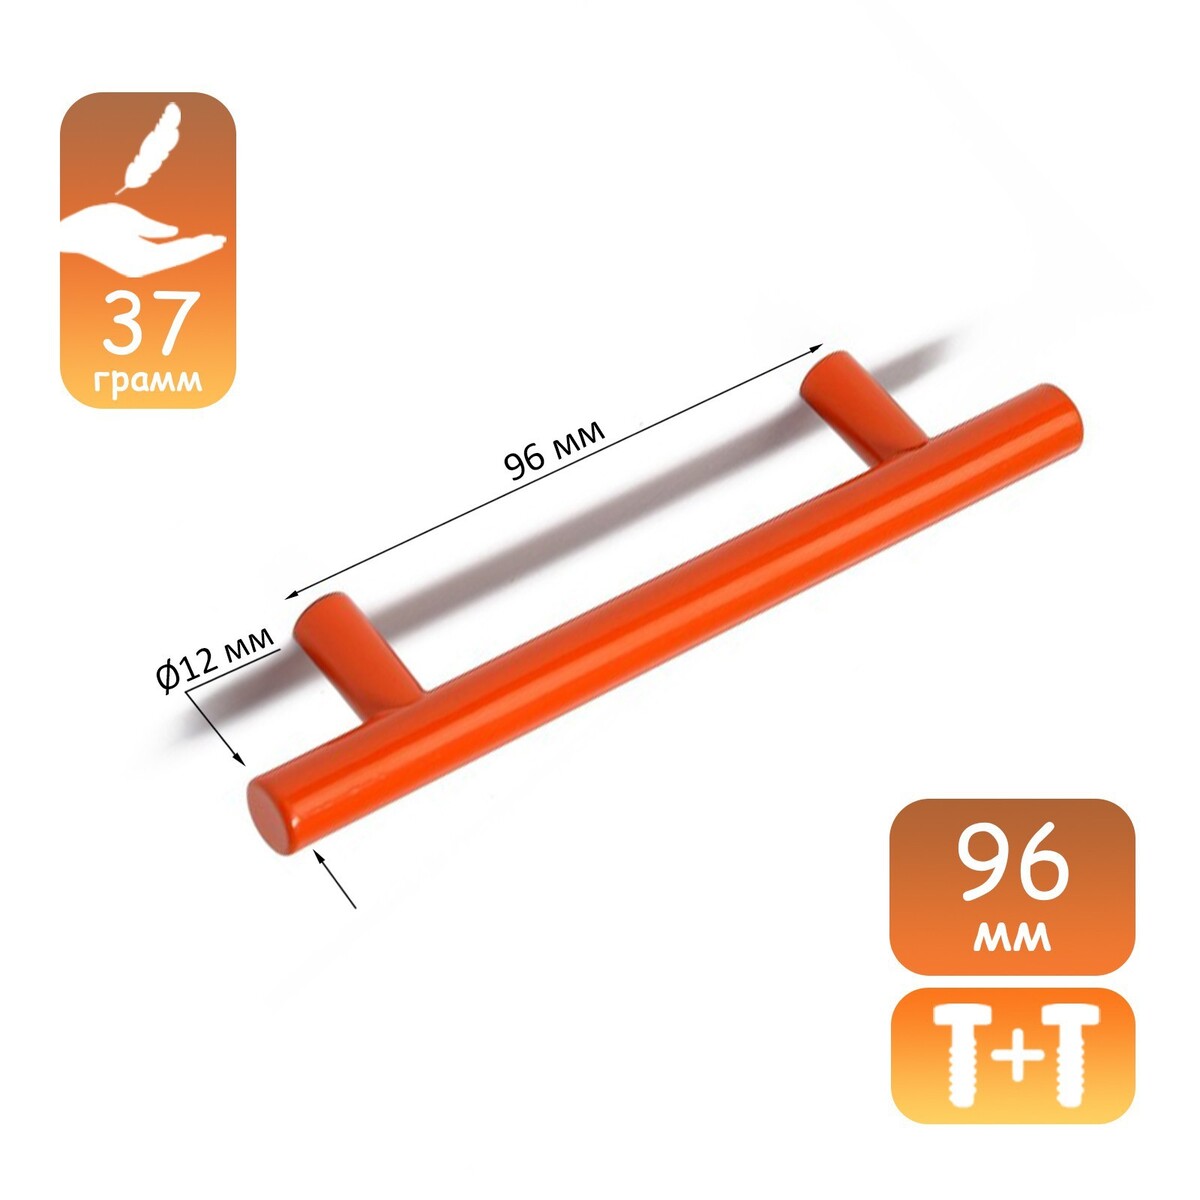 Ручка рейлинг cappio, облегченная, d=12 мм, м/о 96 мм, цвет оранжевый ручка рейлинг cappio облегченная d 12 мм м о 96 мм оранжевый